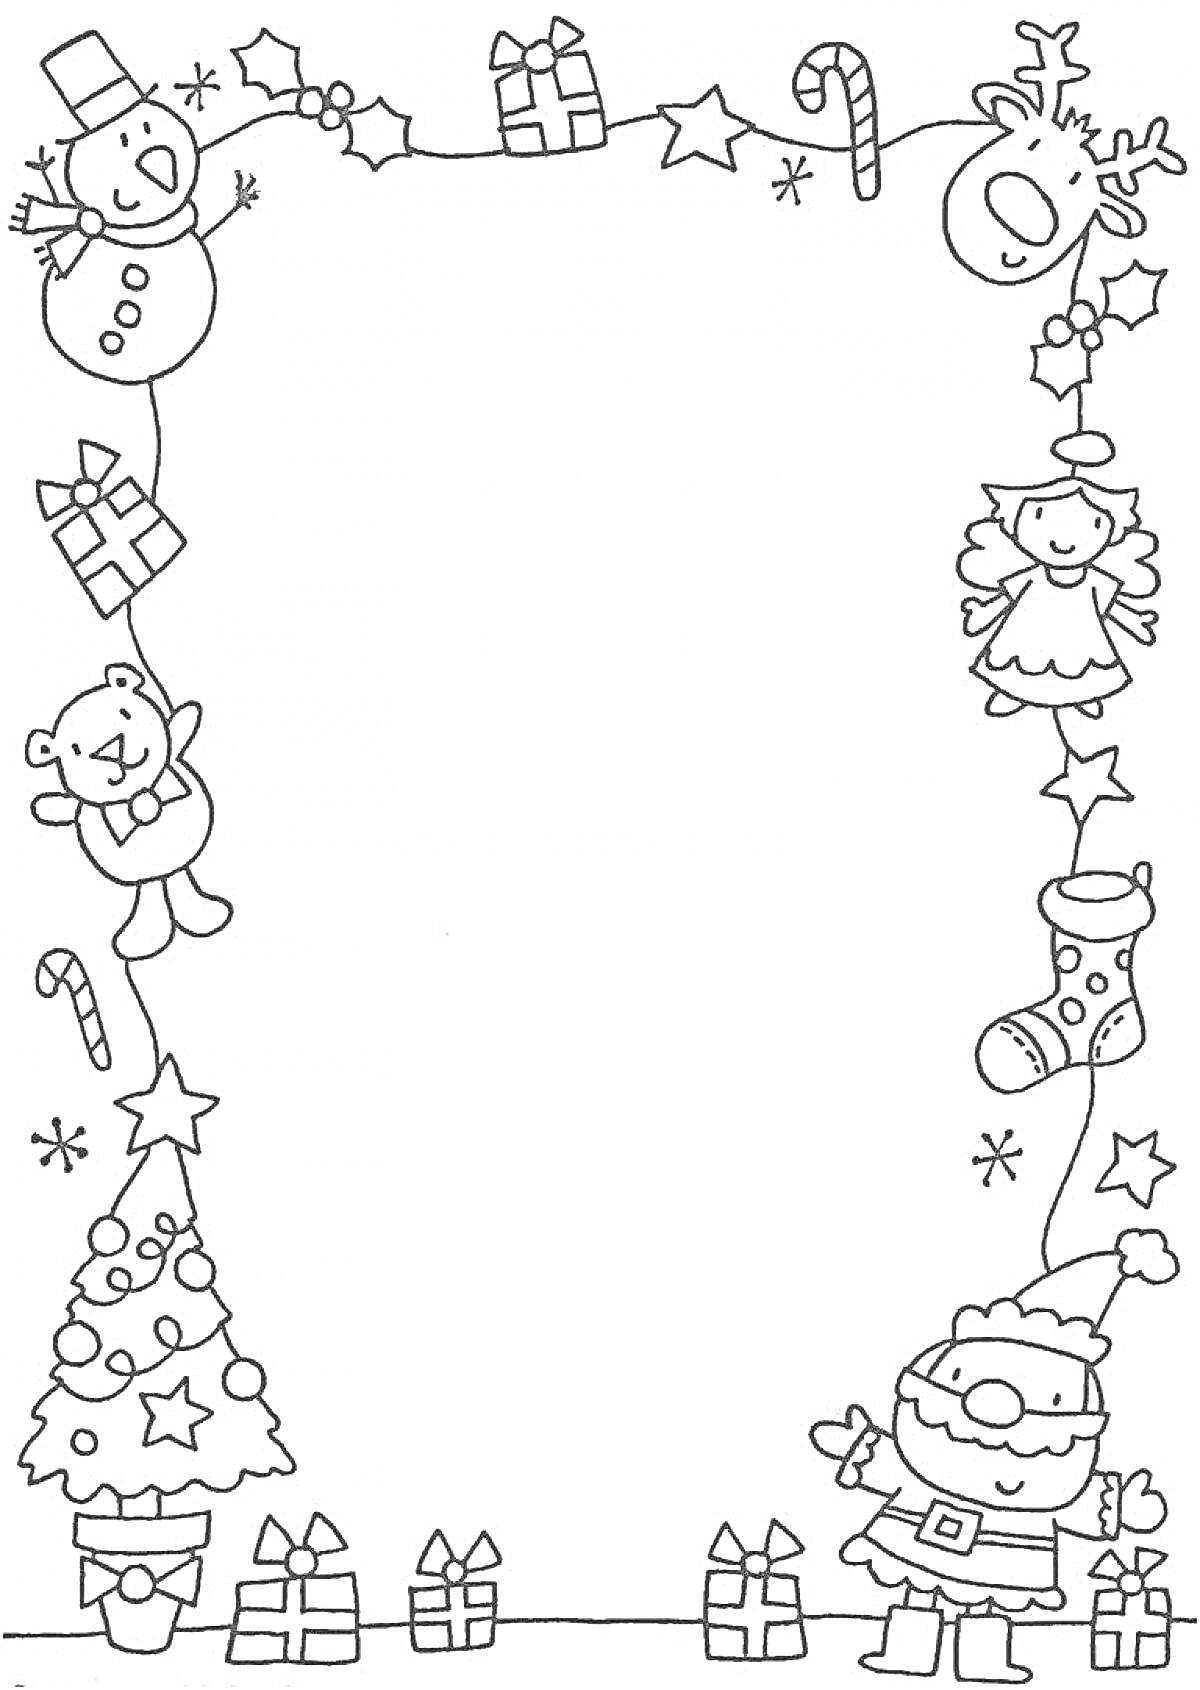 Раскраска Новогодняя раскраска с санта-клаусом, снеговиком, ангелом, оленем, подарками, рождественской елкой, звездами, конфетами и рождественским носком